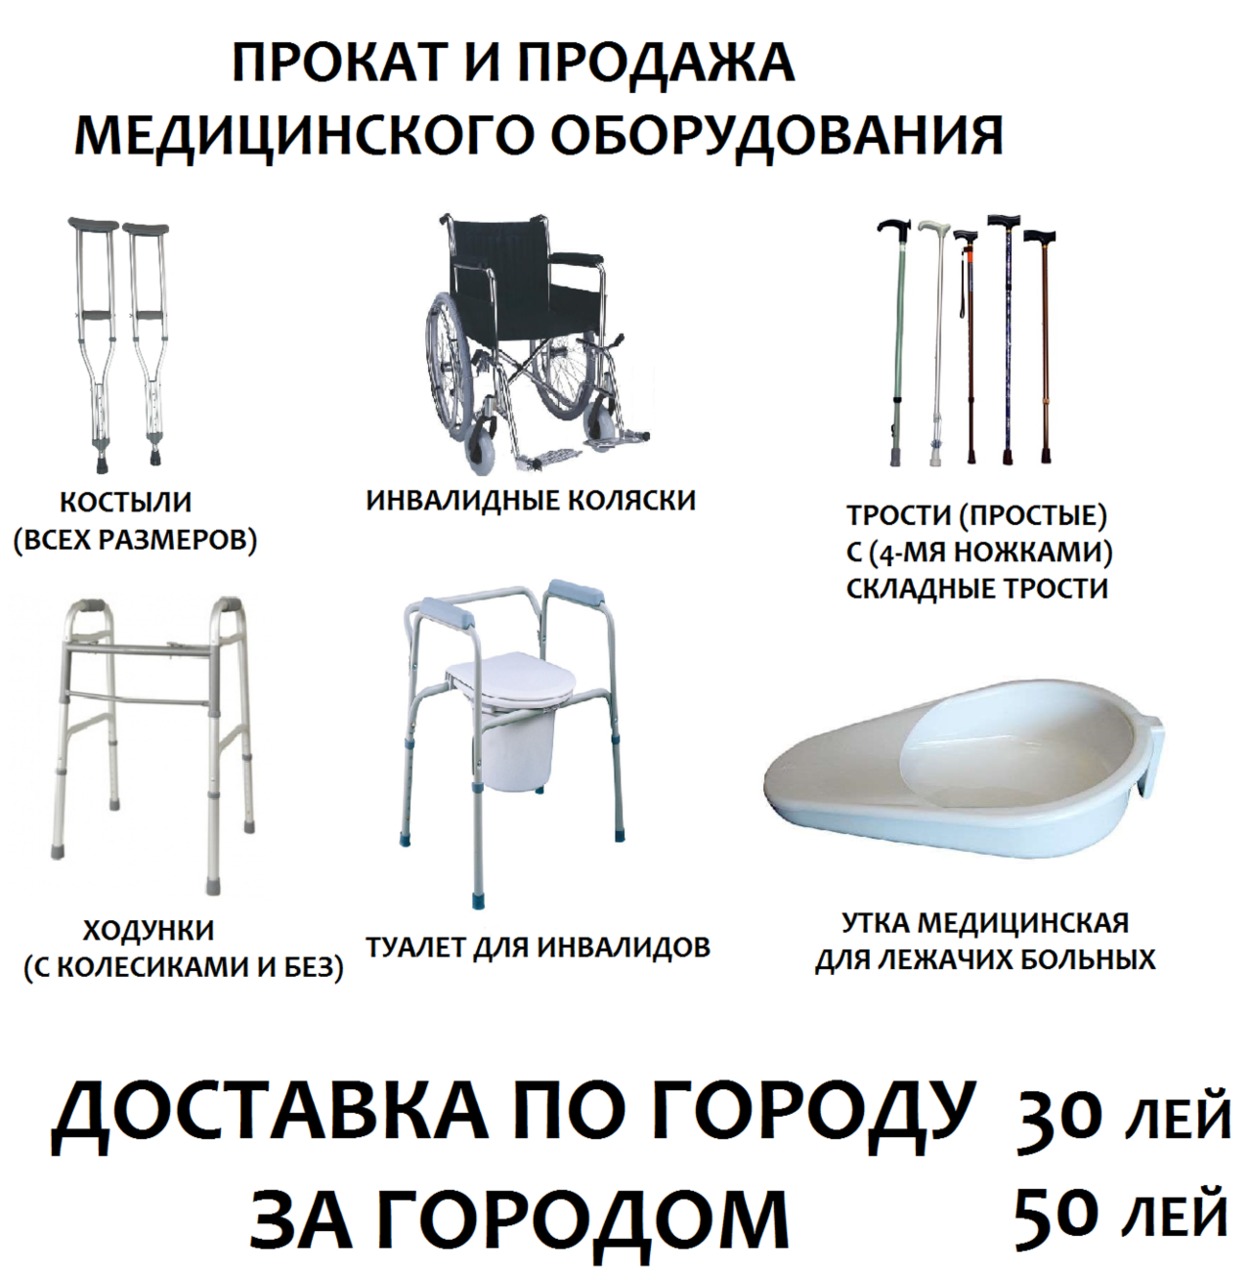 Принадлежности для инвалидов  костыли